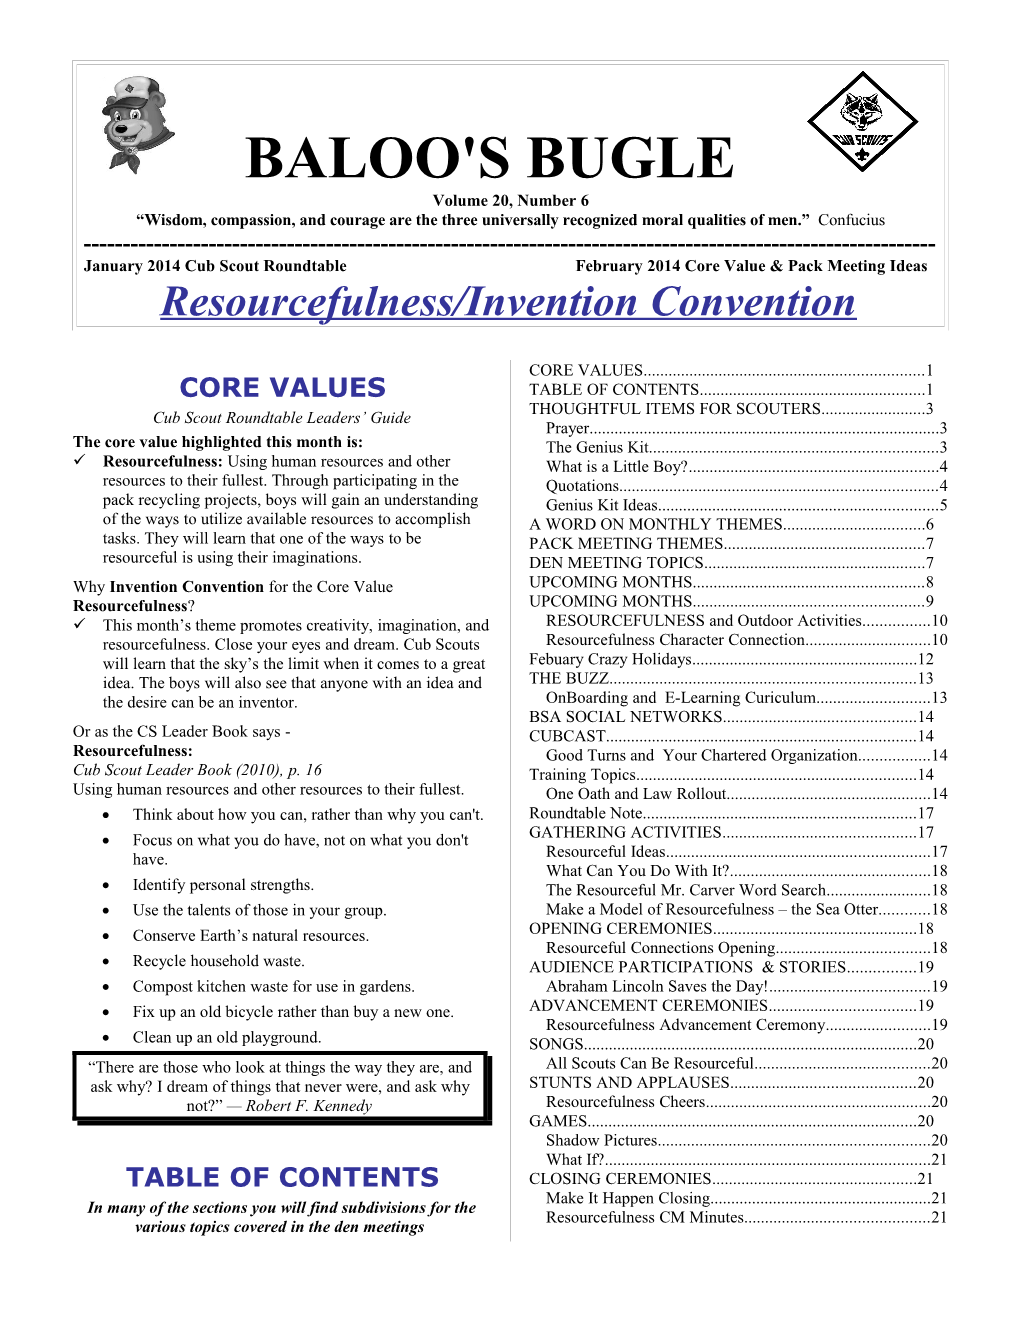 BALOO's BUGLE - (February 2014 Ideas) Page 2